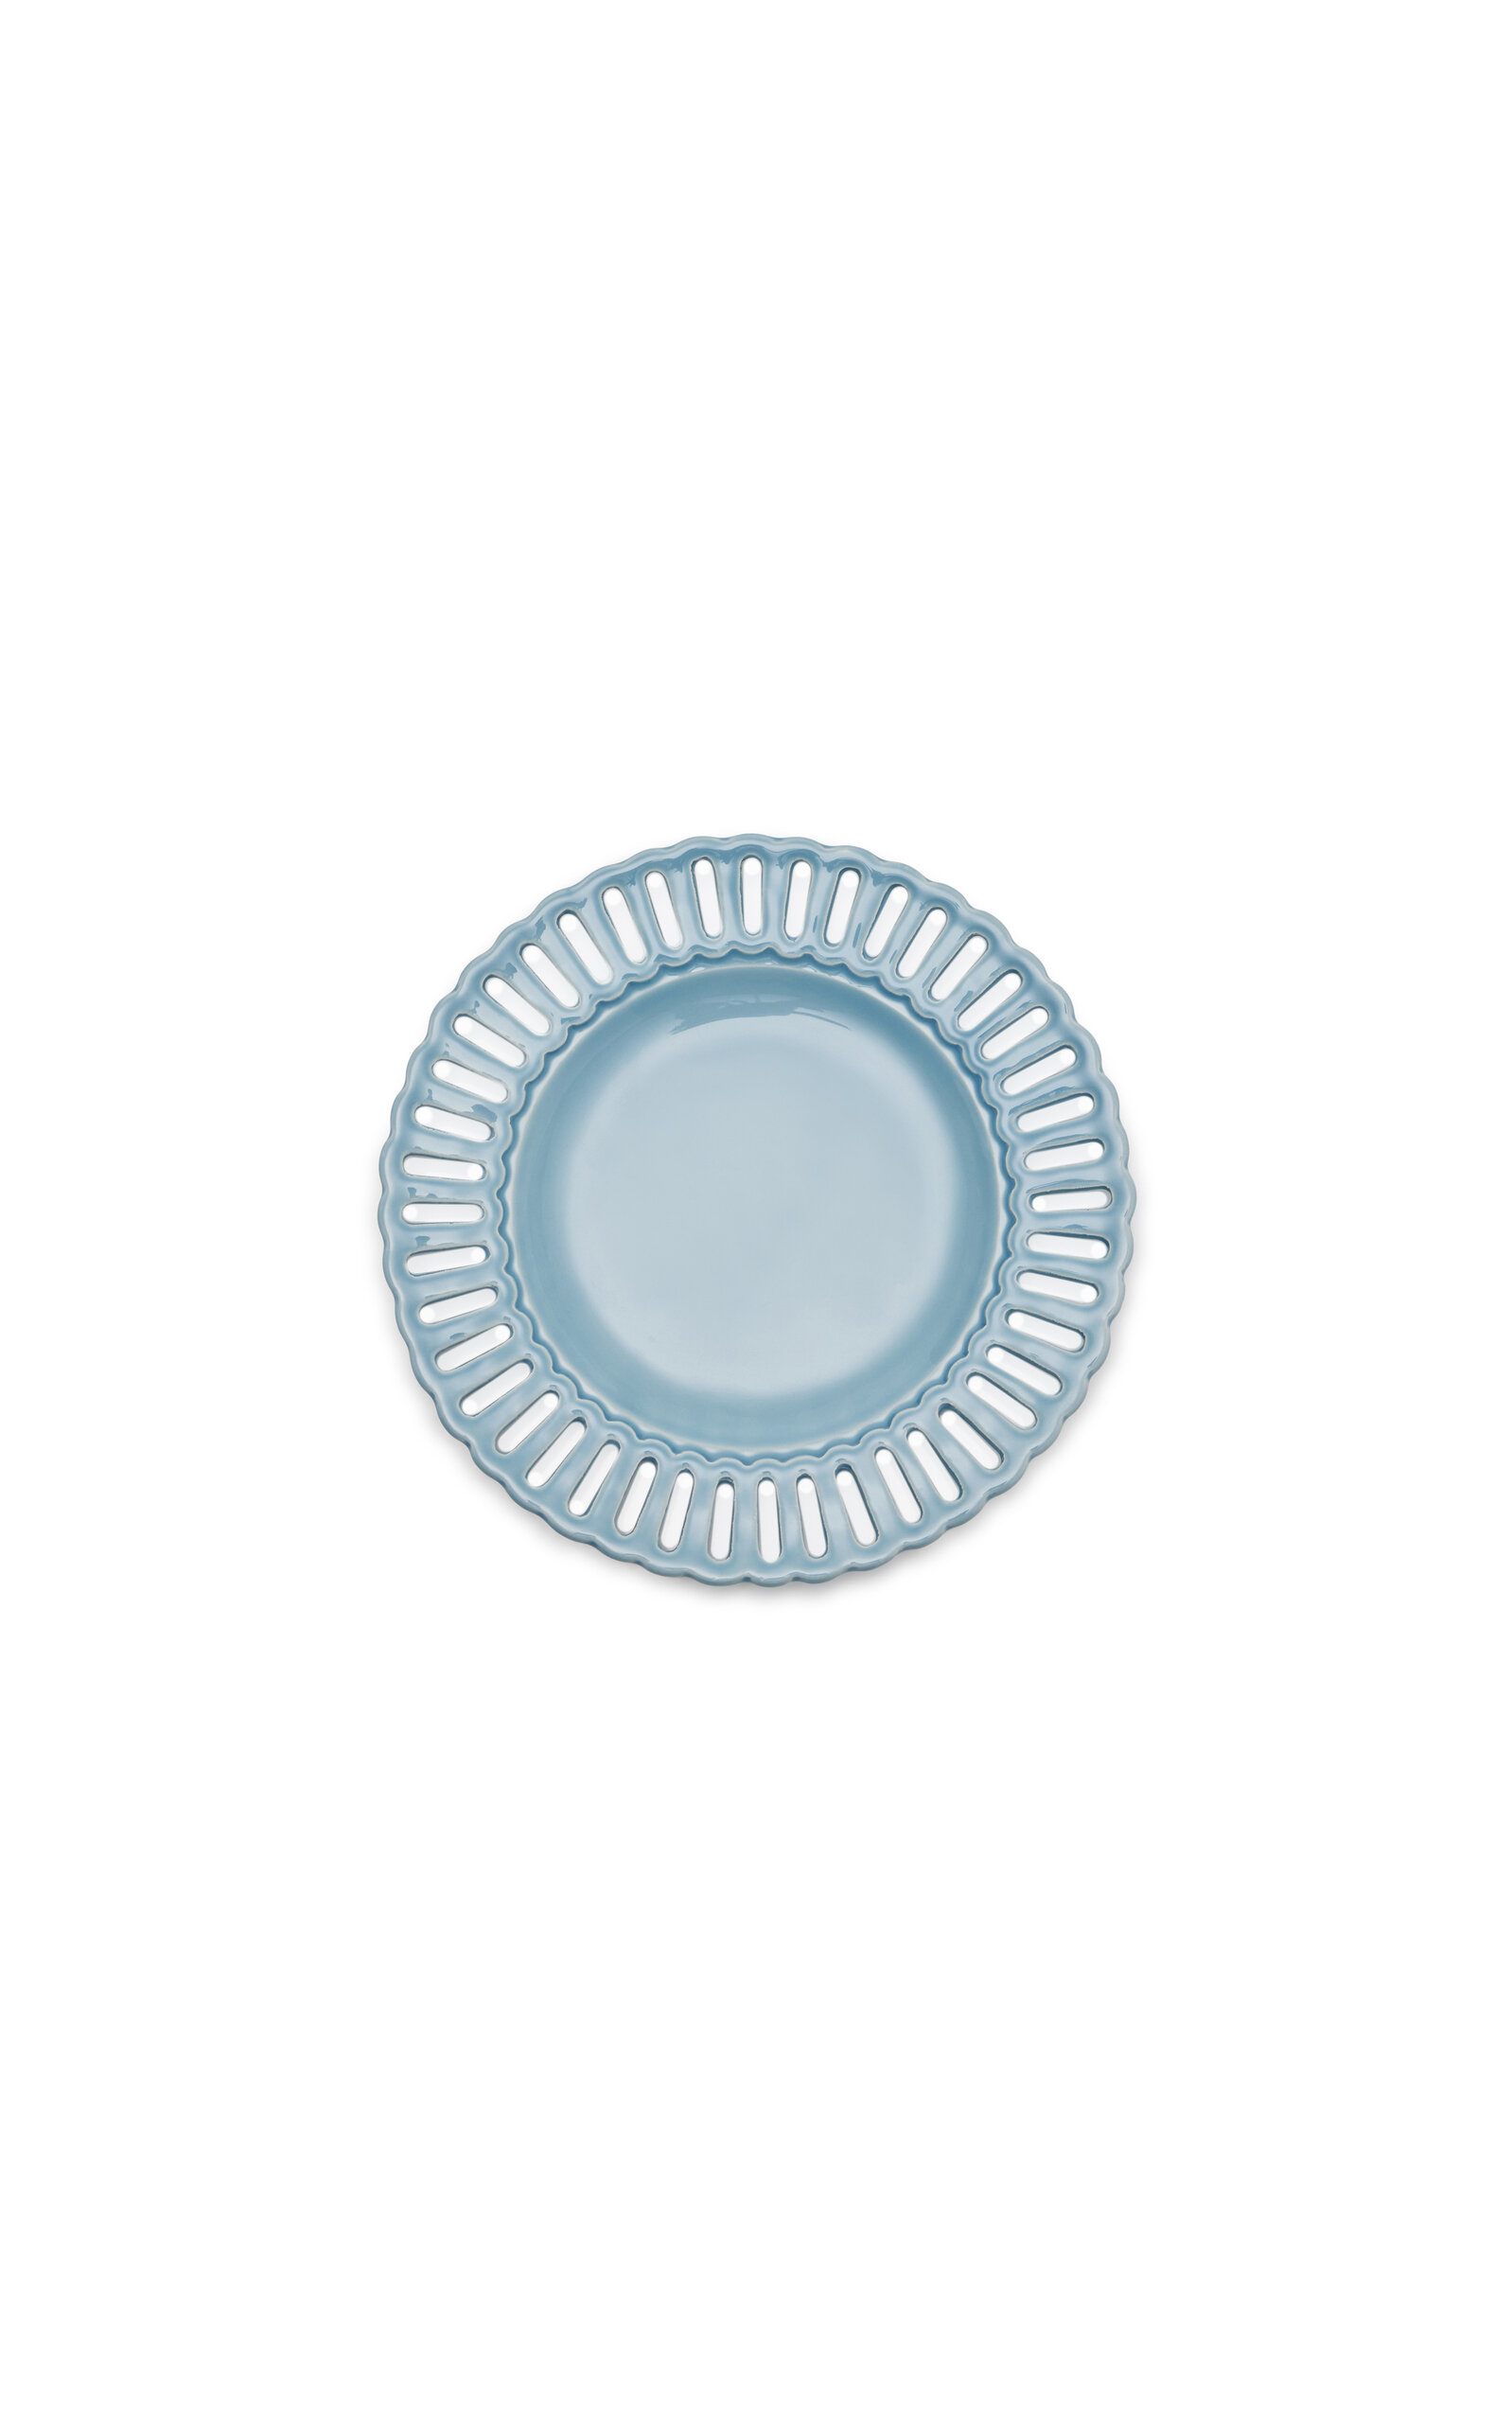 Moda Domus Balconata Creamware Dessert Plate In Blue